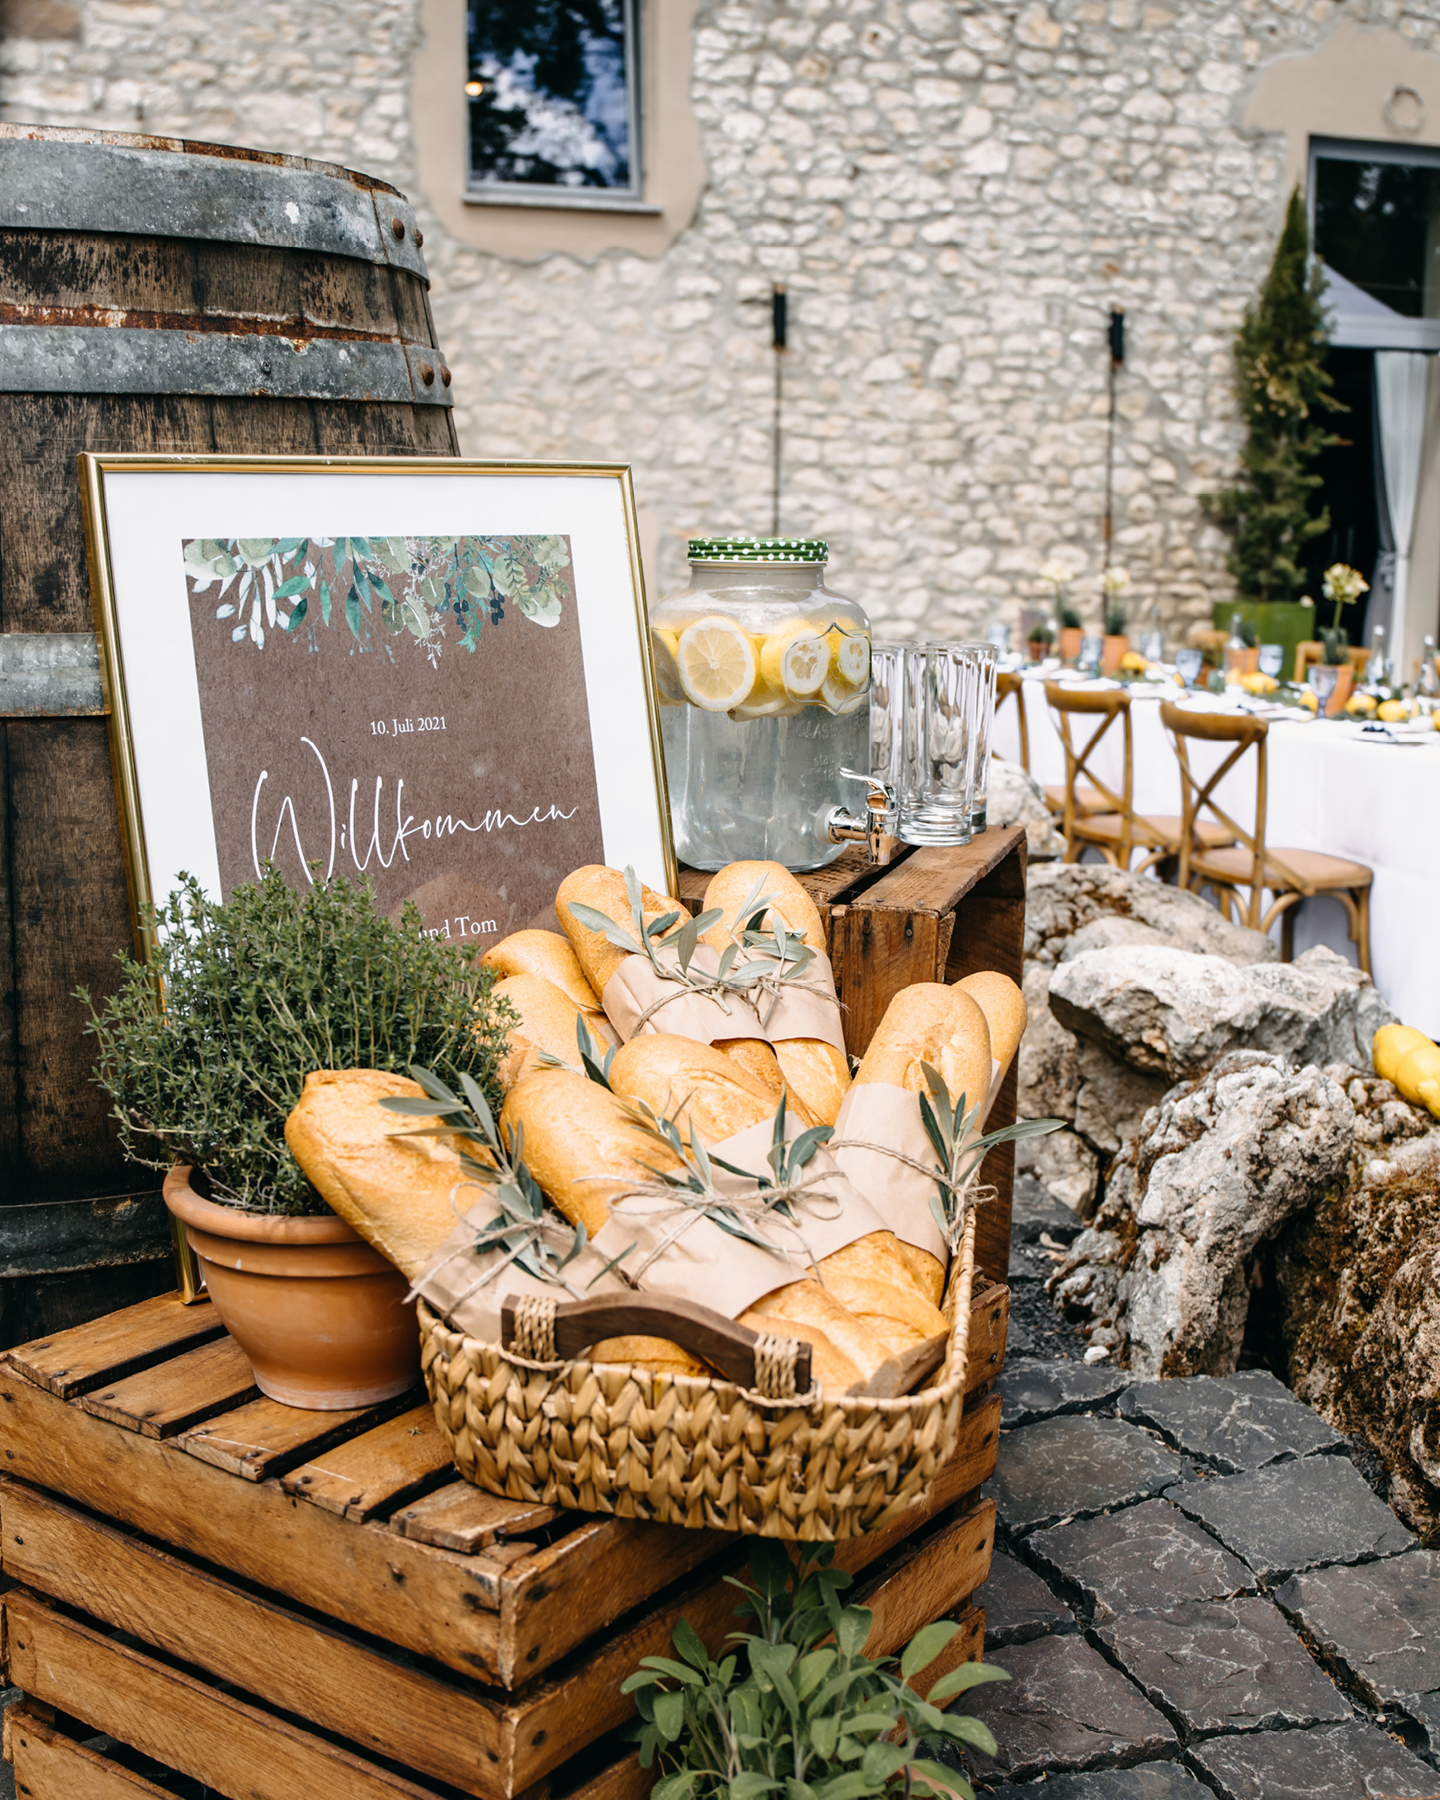 Wilkommensschild aus Kraftpapier begrüßt Gäste zur Feier am Weingut, wo geheiratet wird. Baguette liegt im Korb und Zitronenlimonade steht bereit.